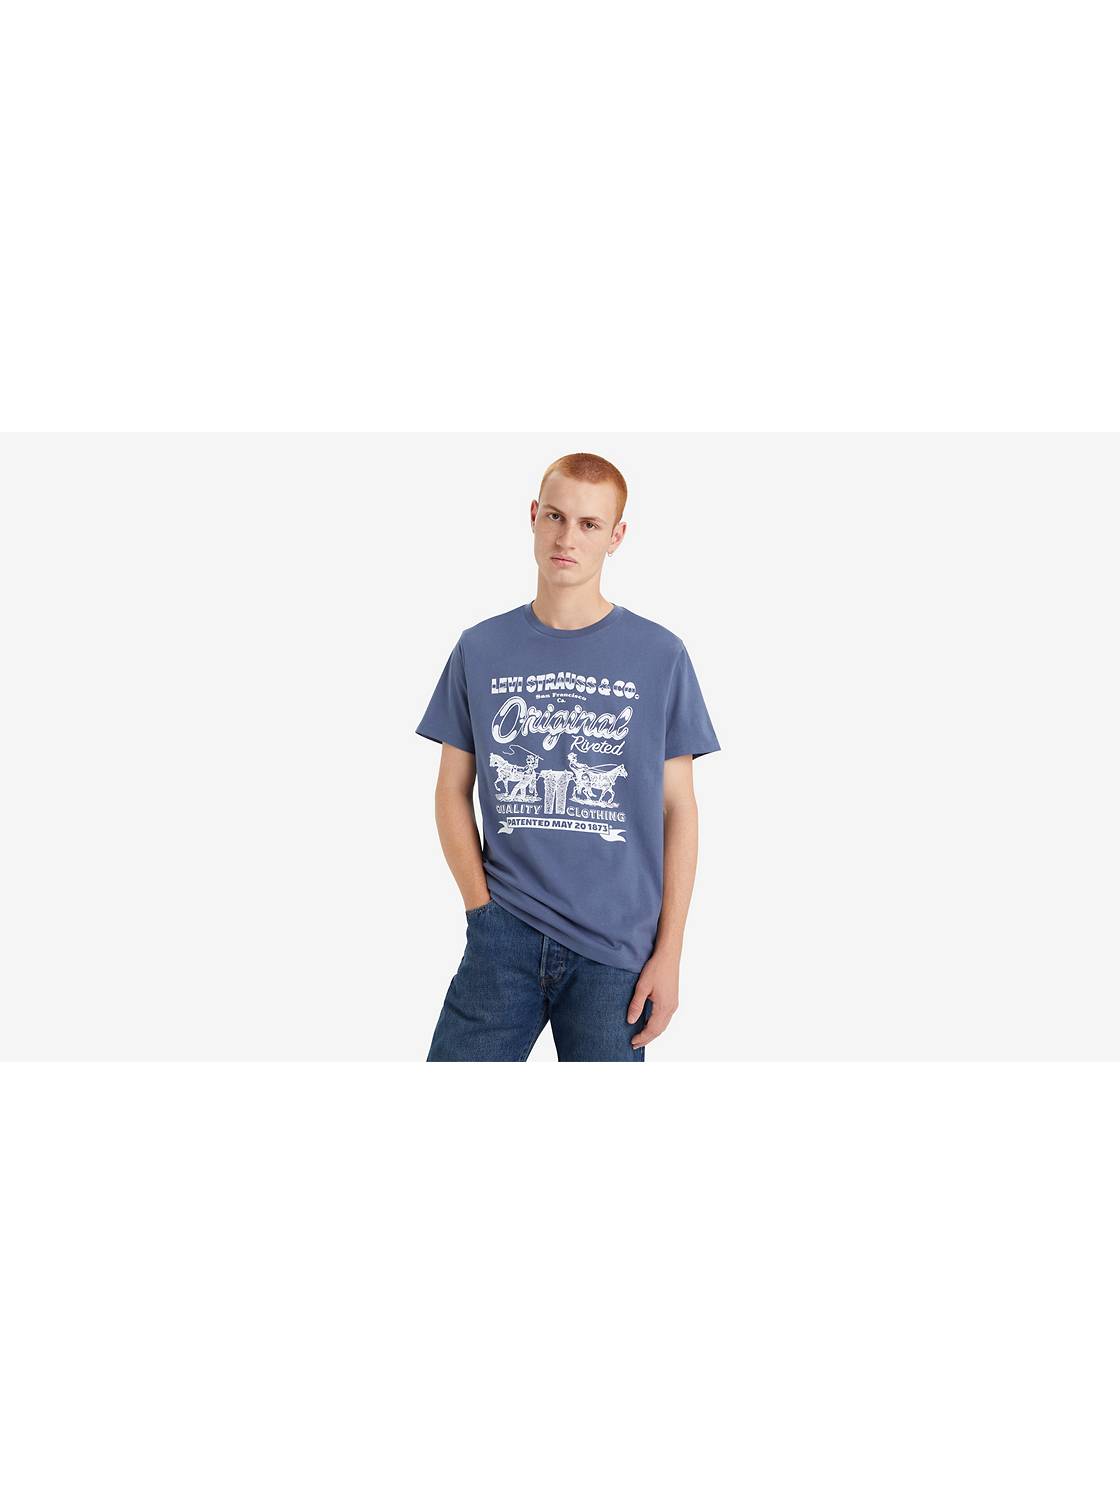 Nouvelle collection tee-shirt Levi's homme à Nîmes - Jeans Center - Jeans  Center